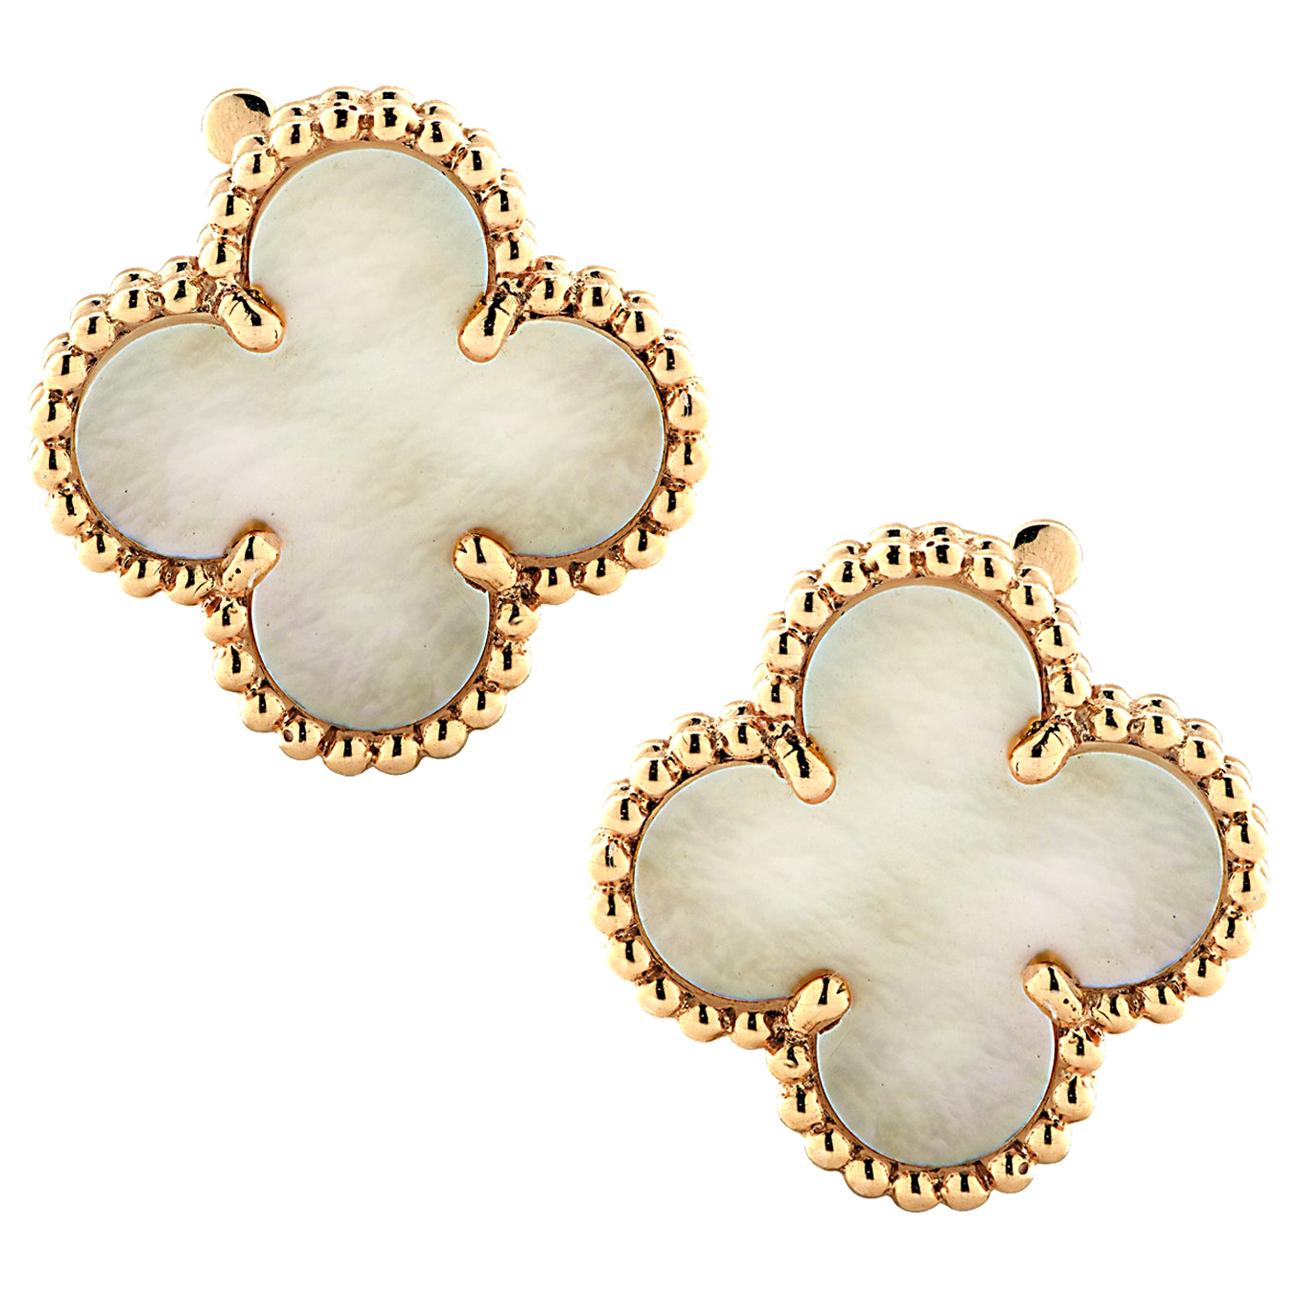 Van Cleef & Arpels Vintage Alhambra Mother of Pearl Earrings